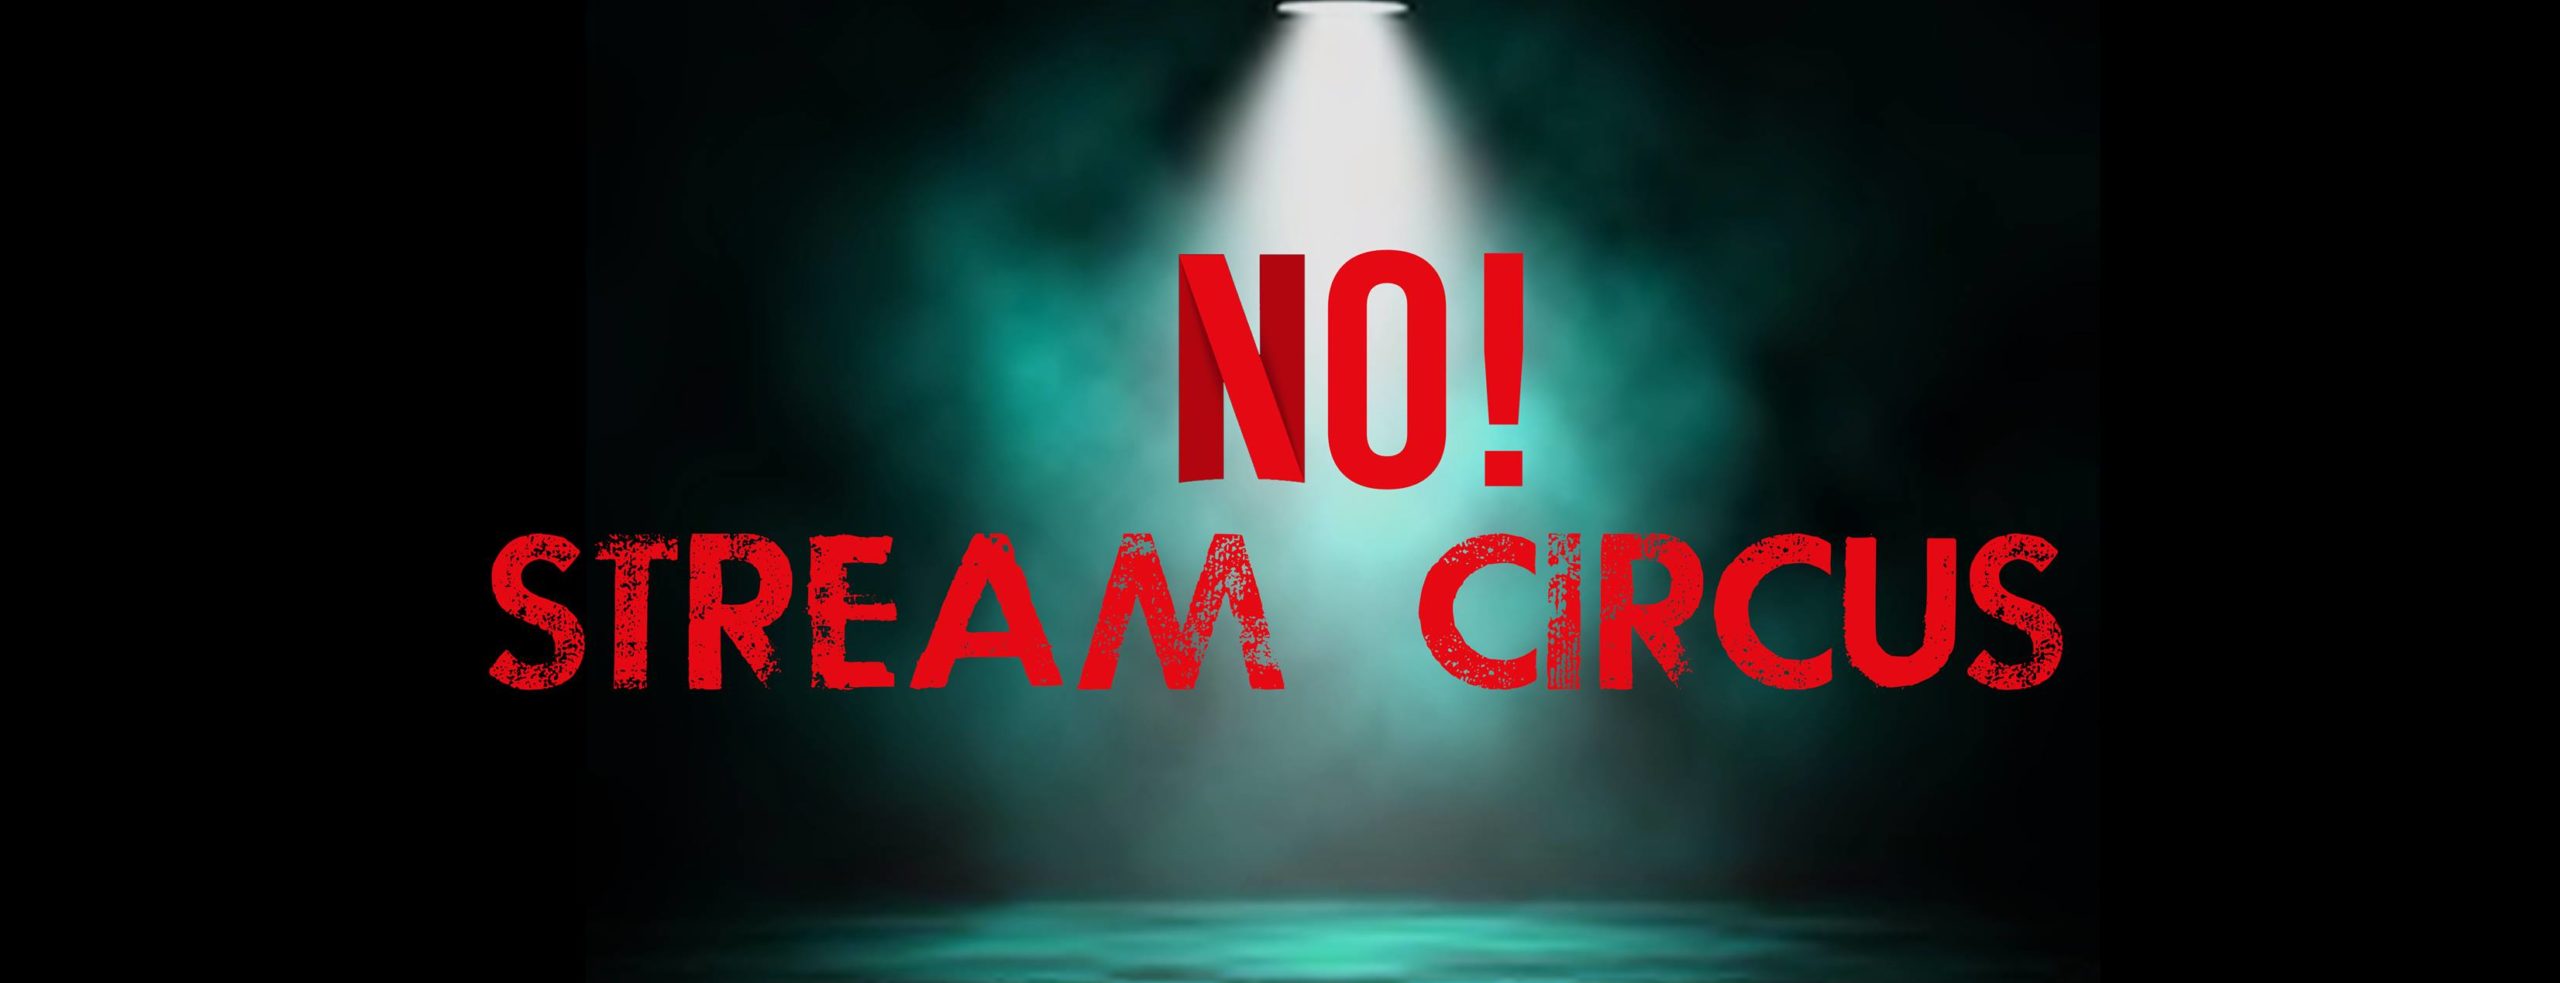 Circo en Streaming? No gracias! El desacuerdo del Circo en un falso evento online